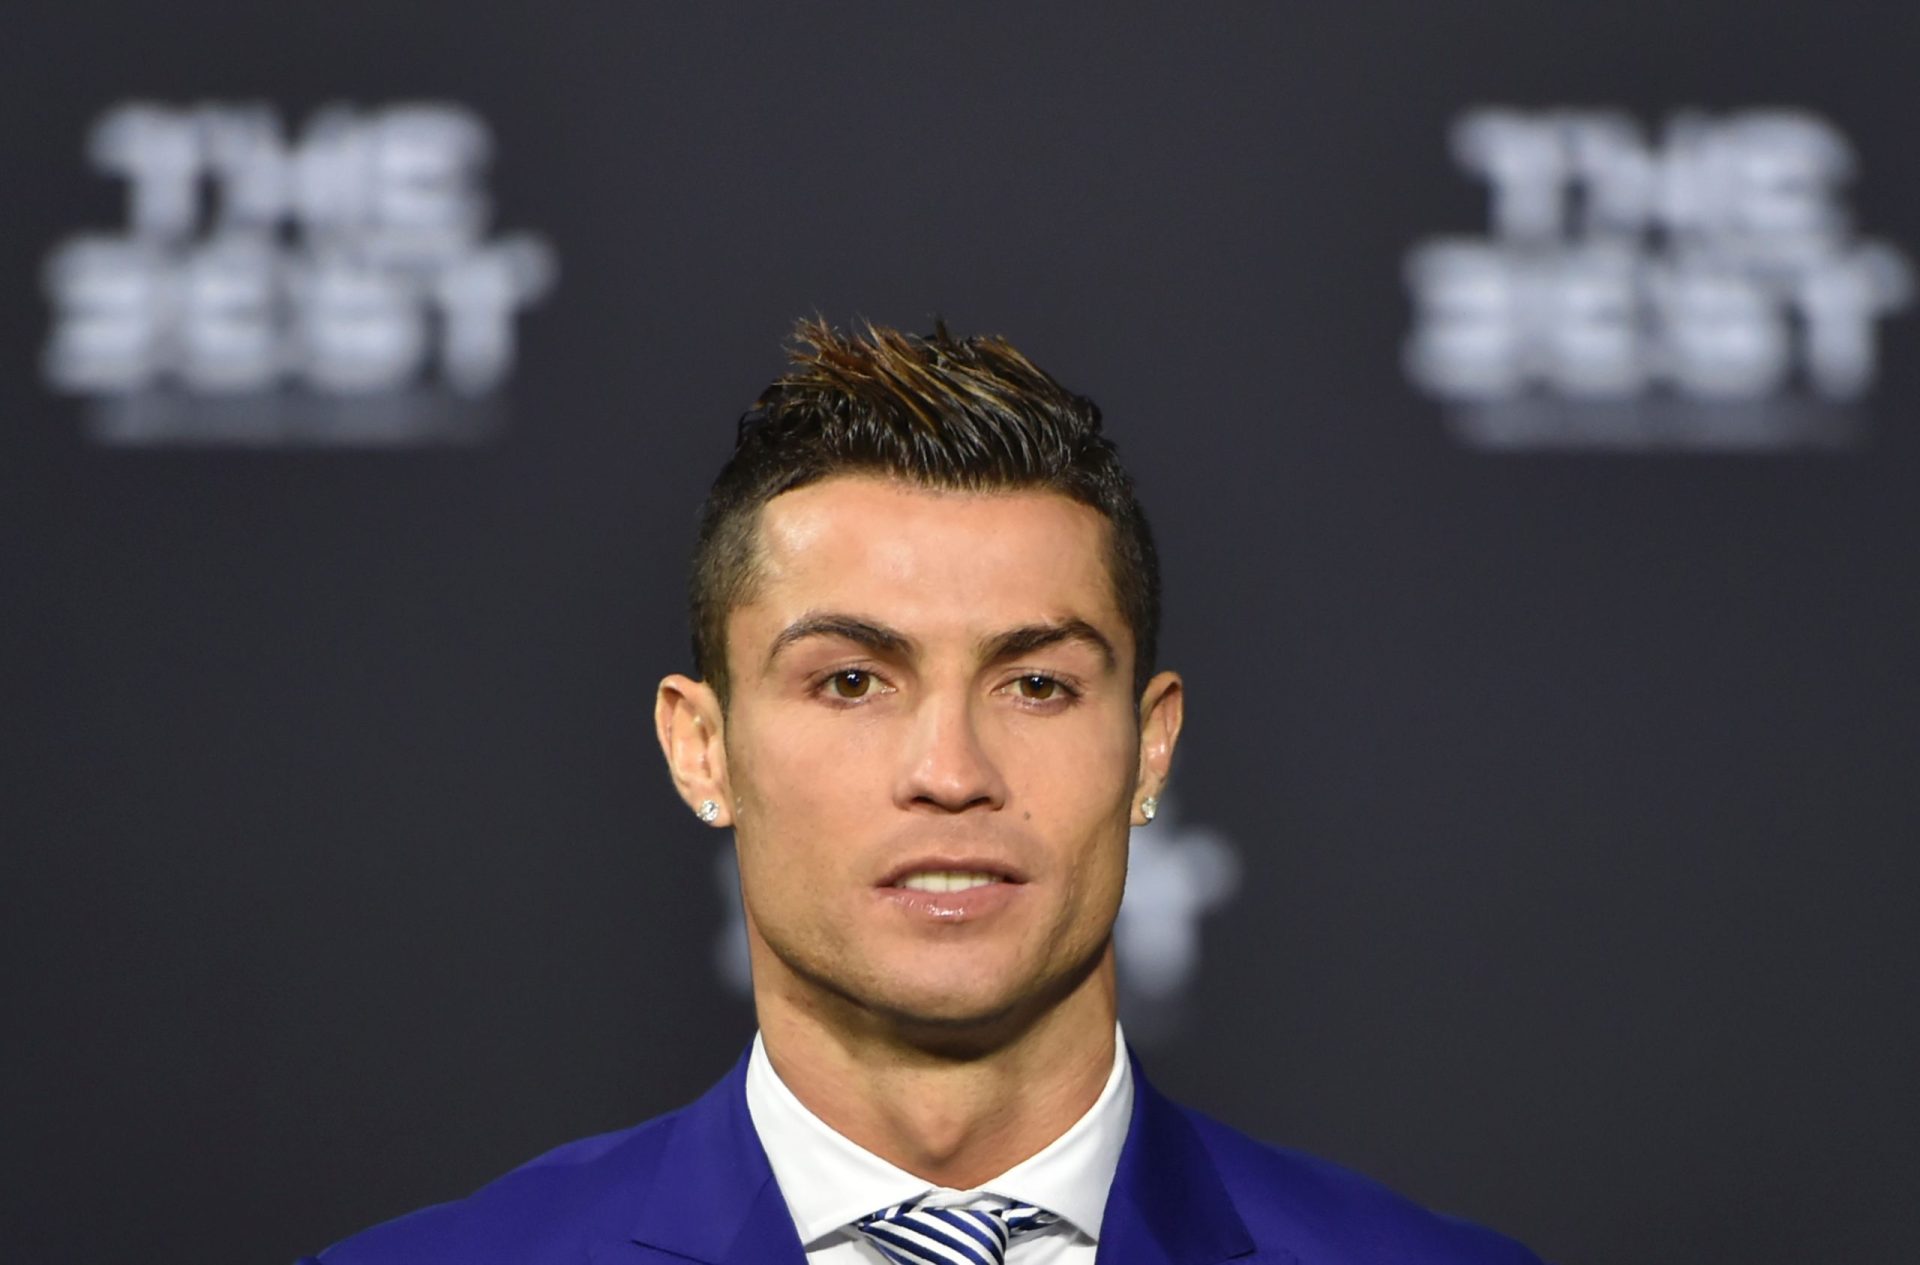 Polícia terá perdido provas contra Cristiano Ronaldo